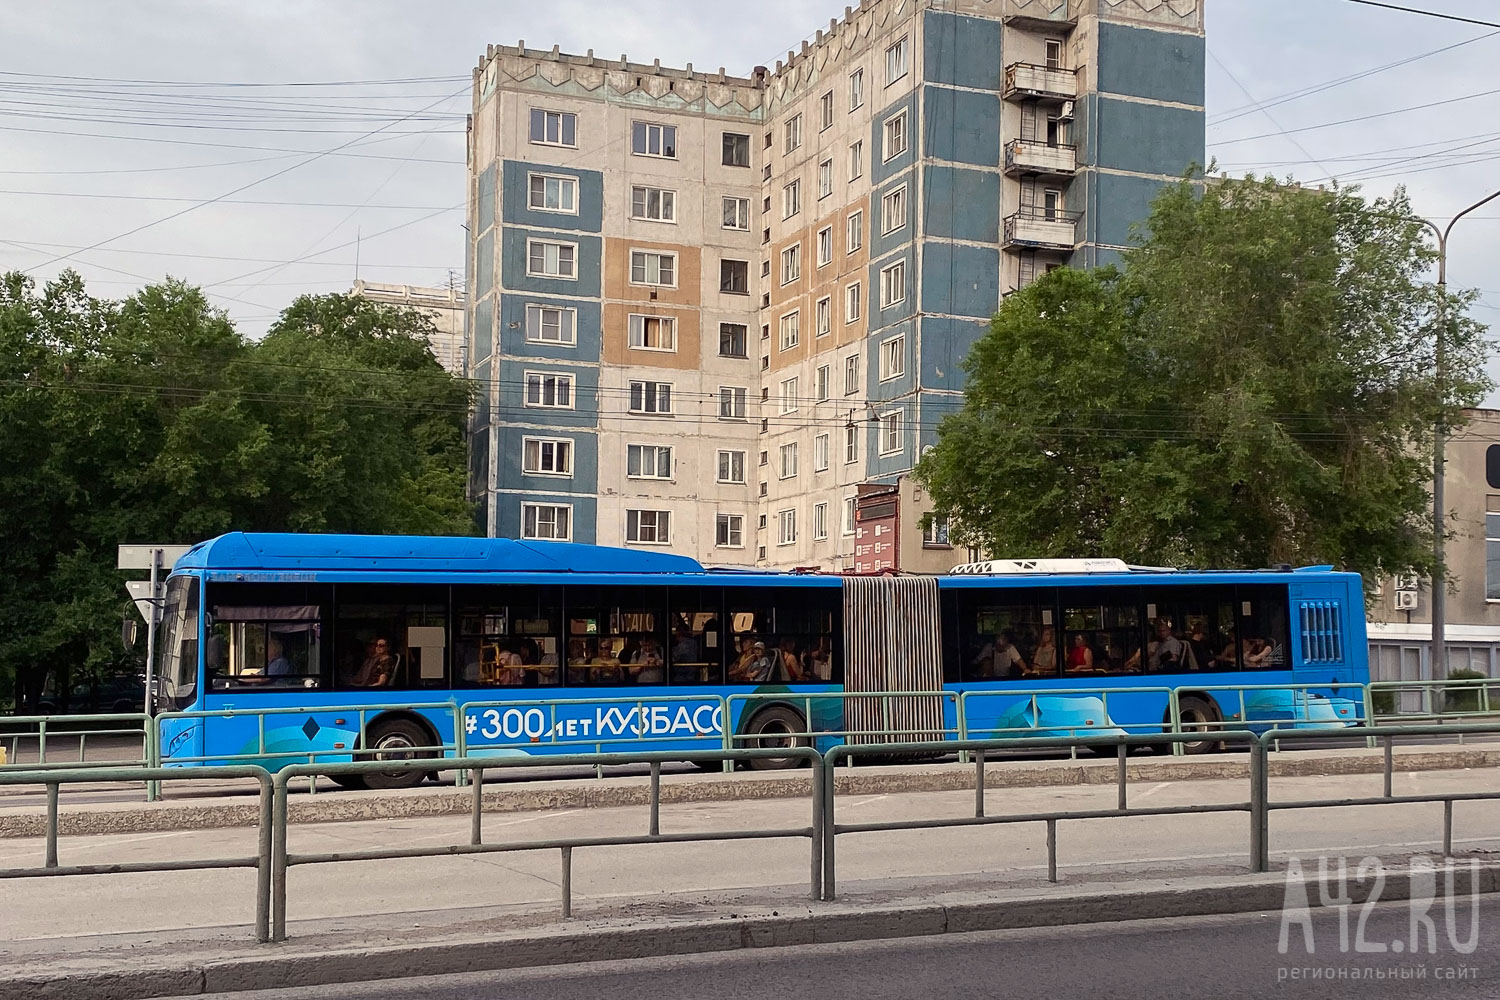 «Удары приходились по лицу»: кузбассовцы сообщили об избиении мужчины в автобусе подростком